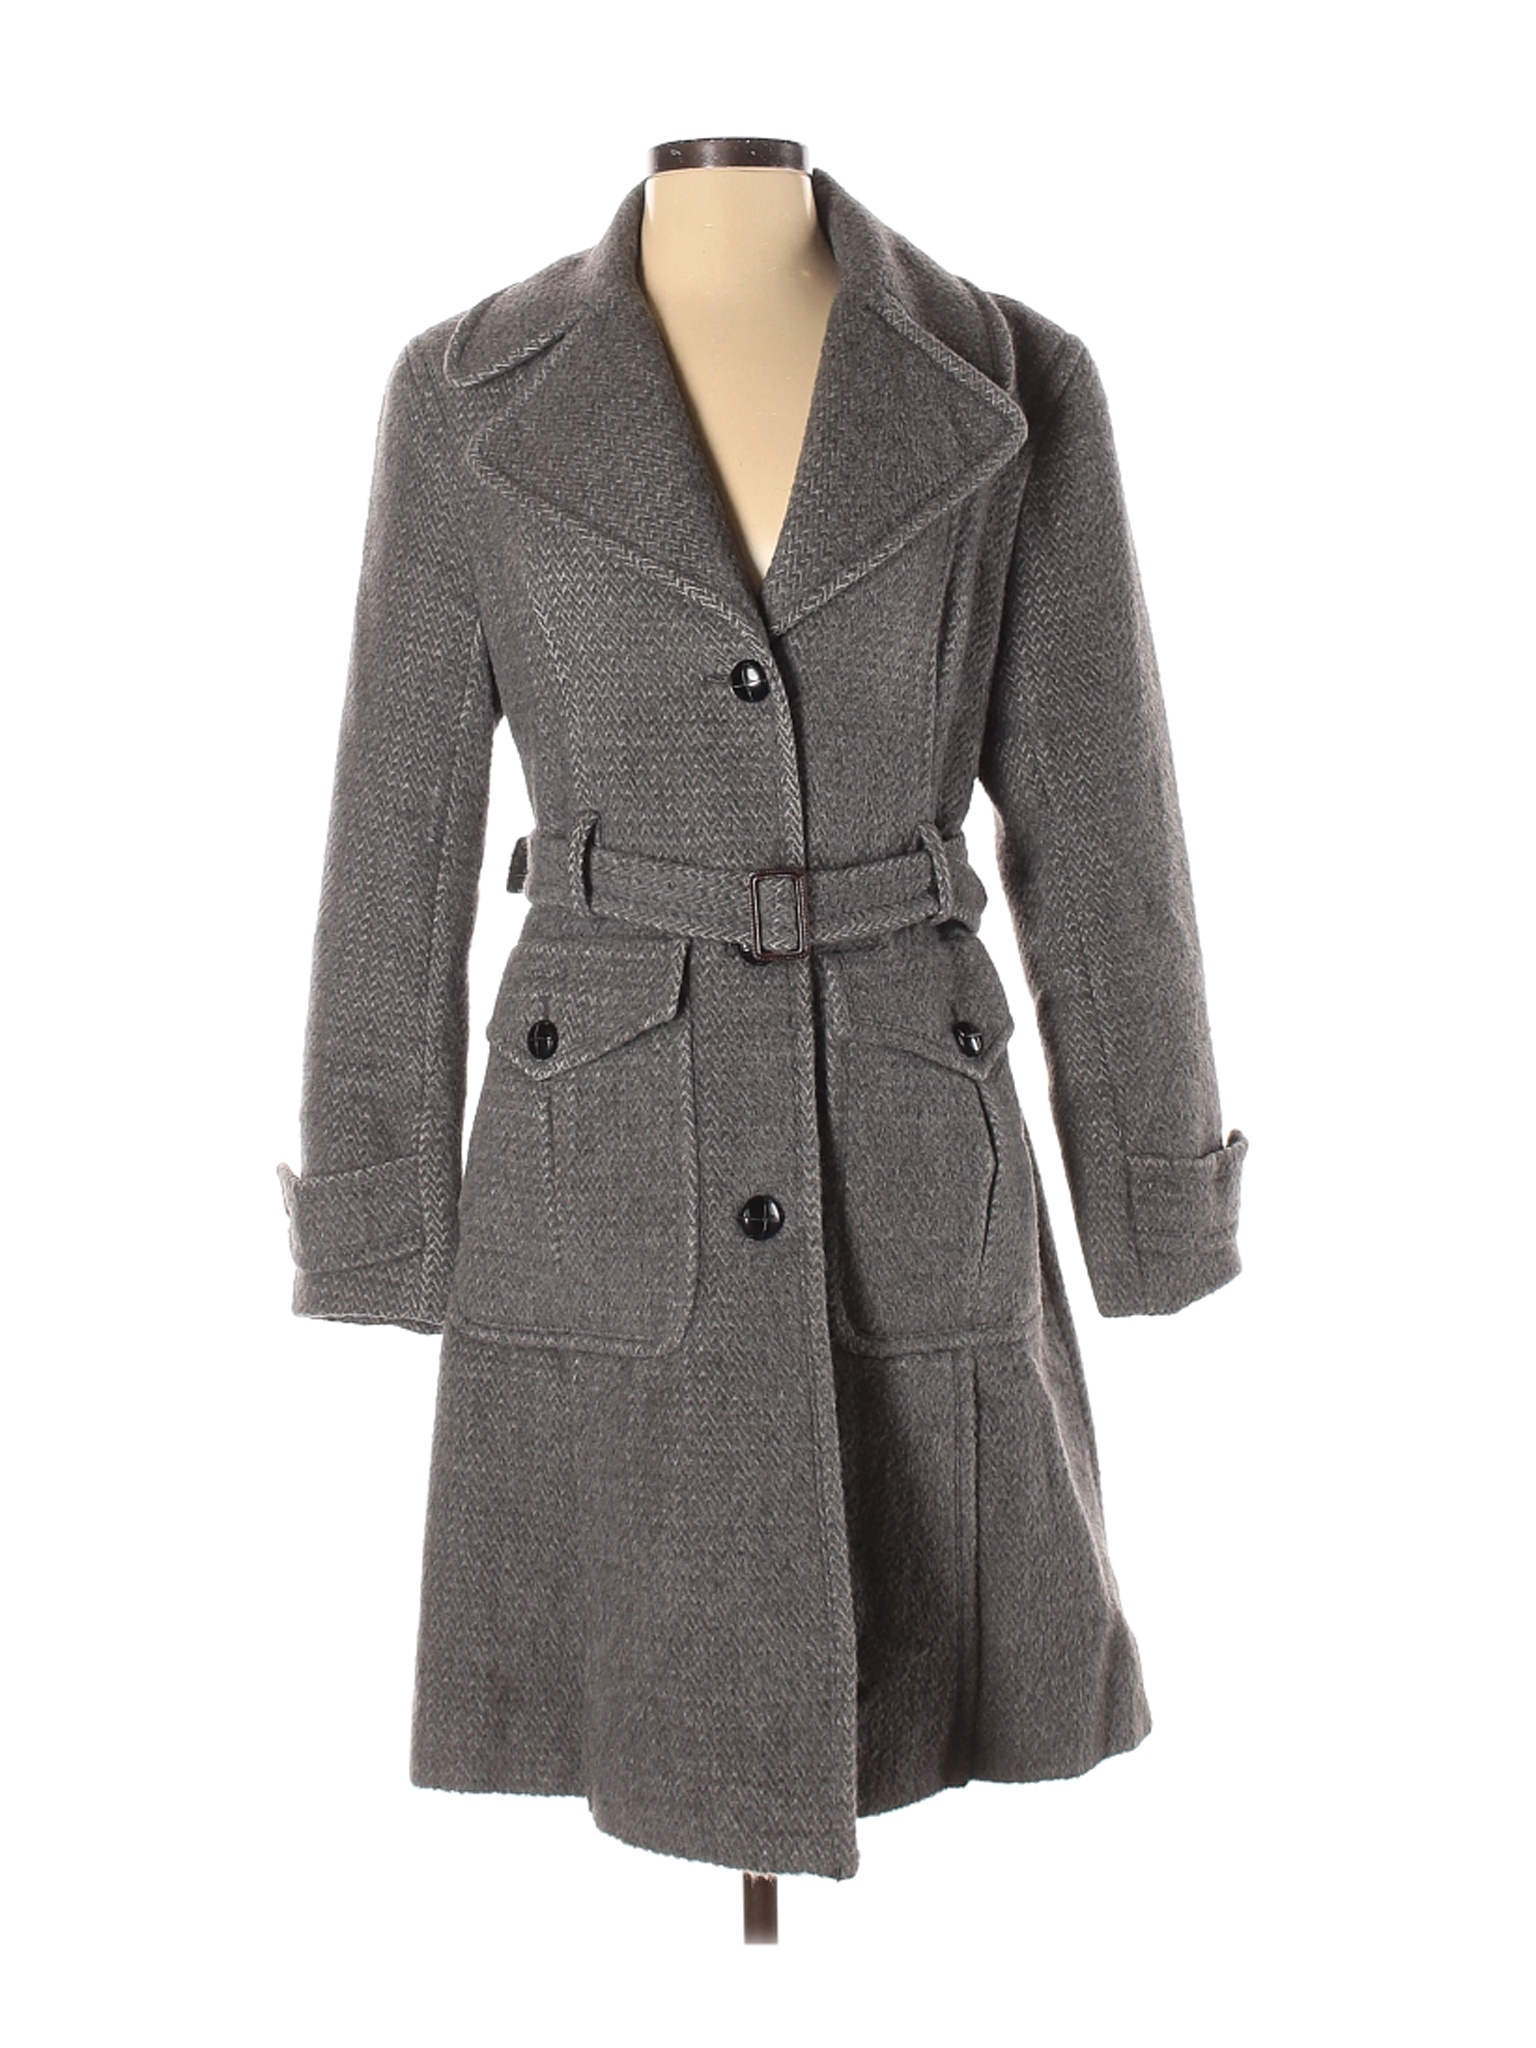 DKNY Women Gray Wool Coat 4 | eBay